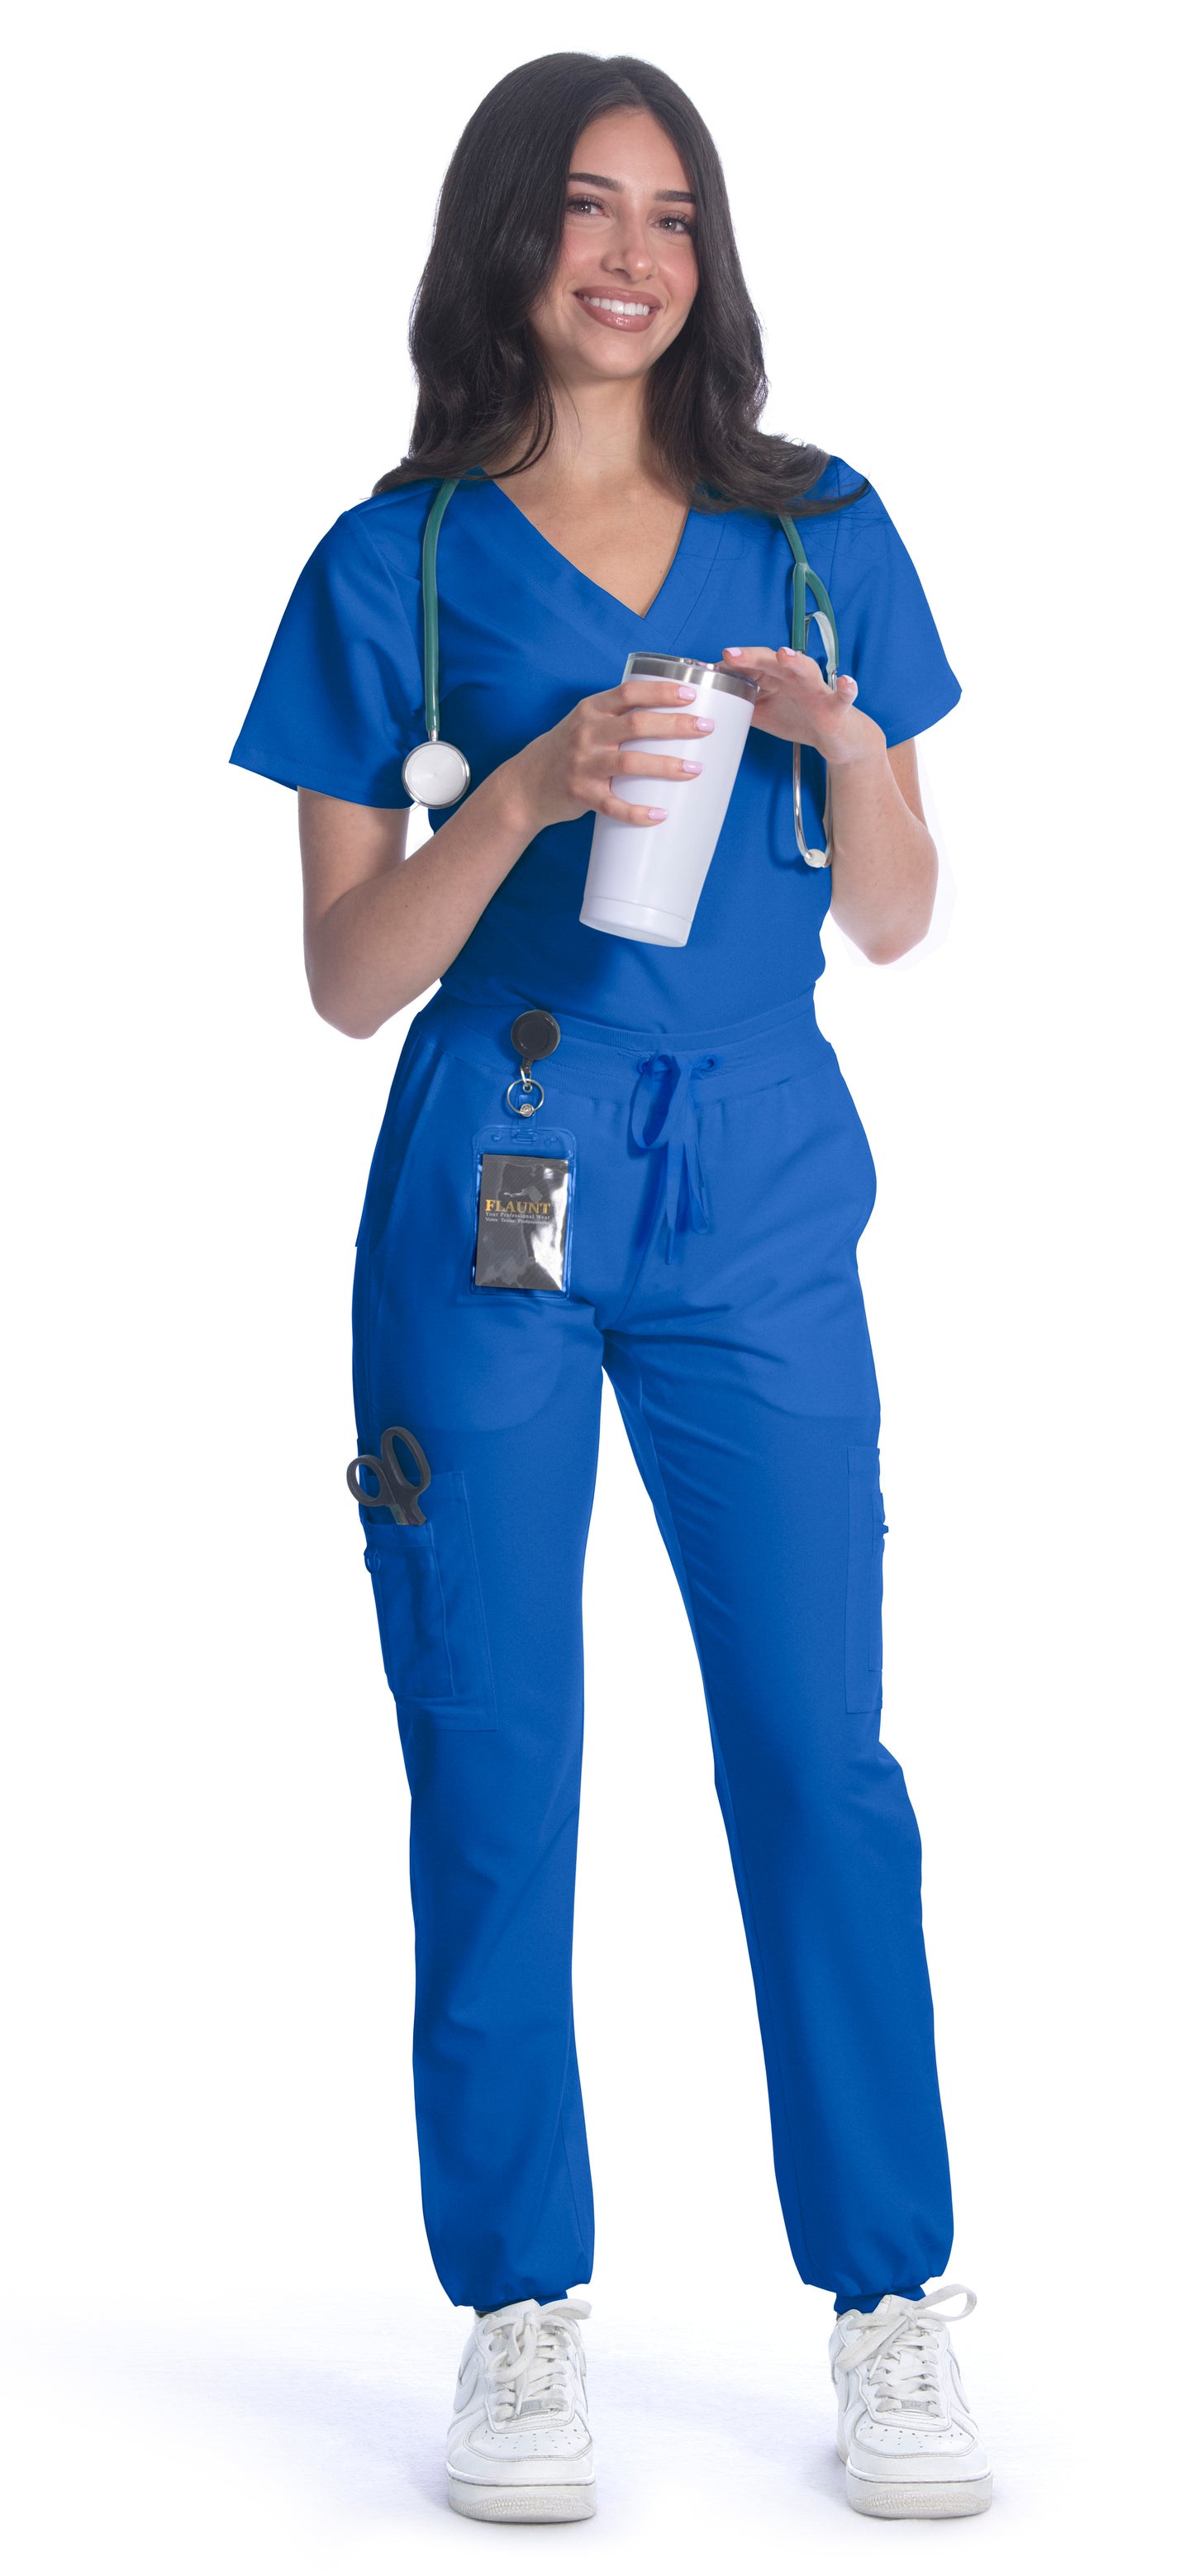 Nursing Scrubs Canada, My Scrubs